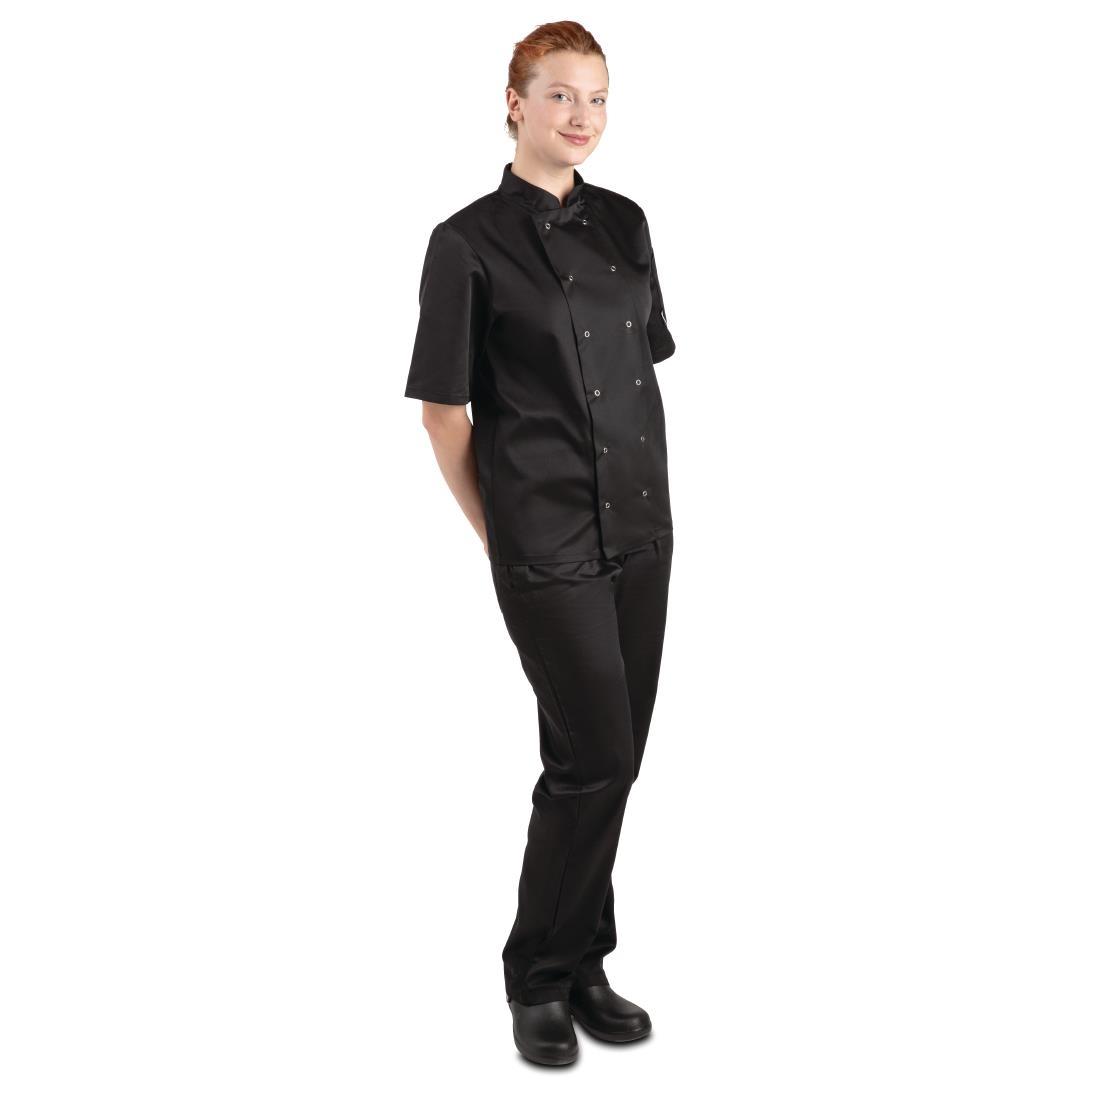 Whites Vegas Unisex Chefs Jacket Short Sleeve Black 3XL - A439-3XL  - 6